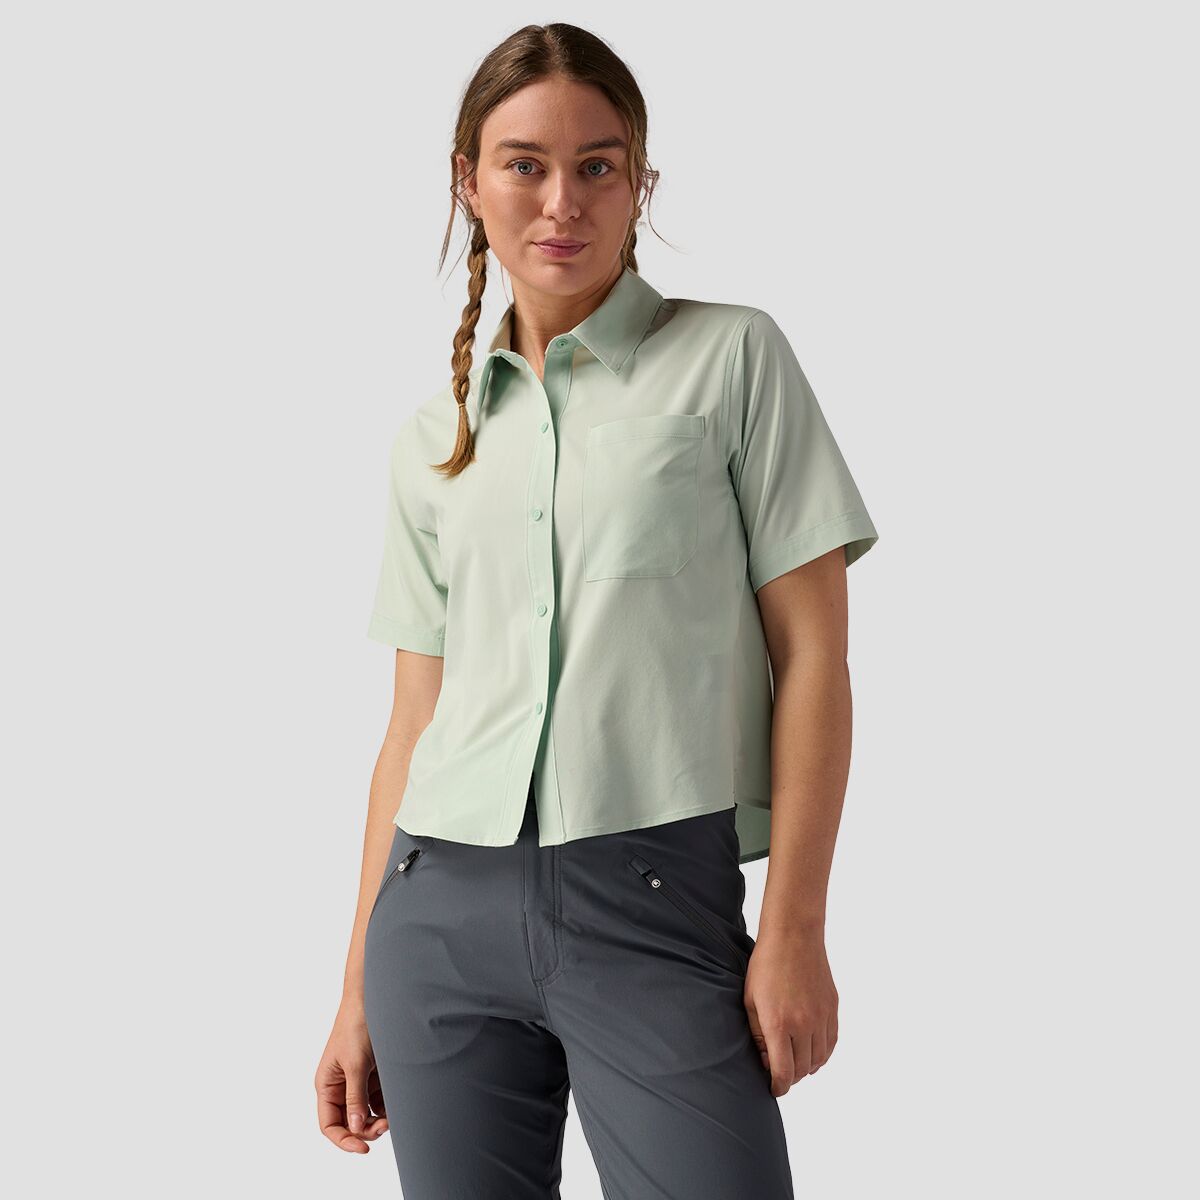 Backcountry Button-Up MTB Jersey - Women's Silt Green, S